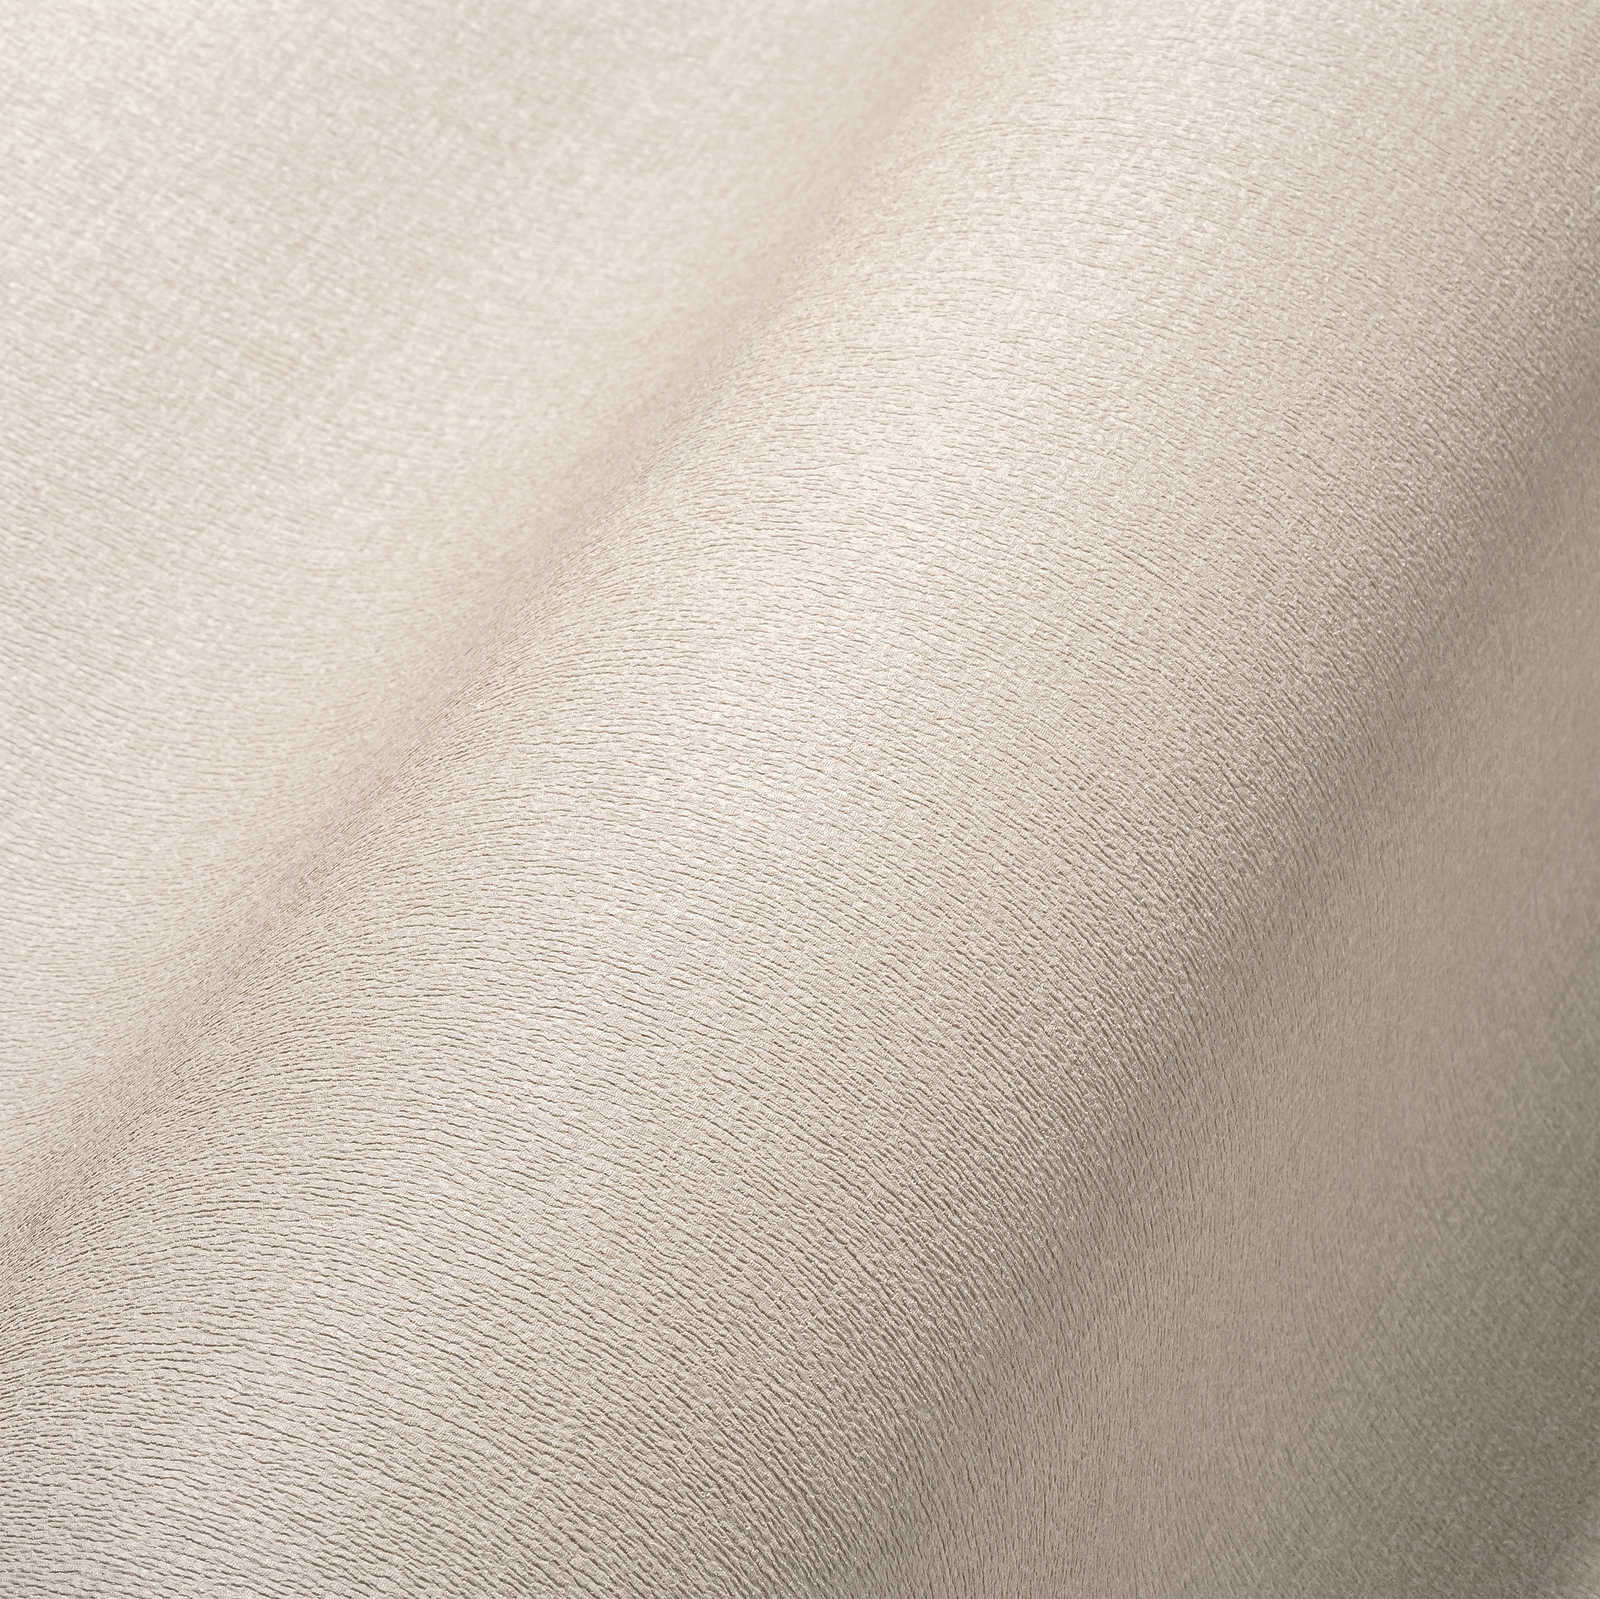             Papel pintado no tejido liso en colores sutiles - greige, gris claro
        